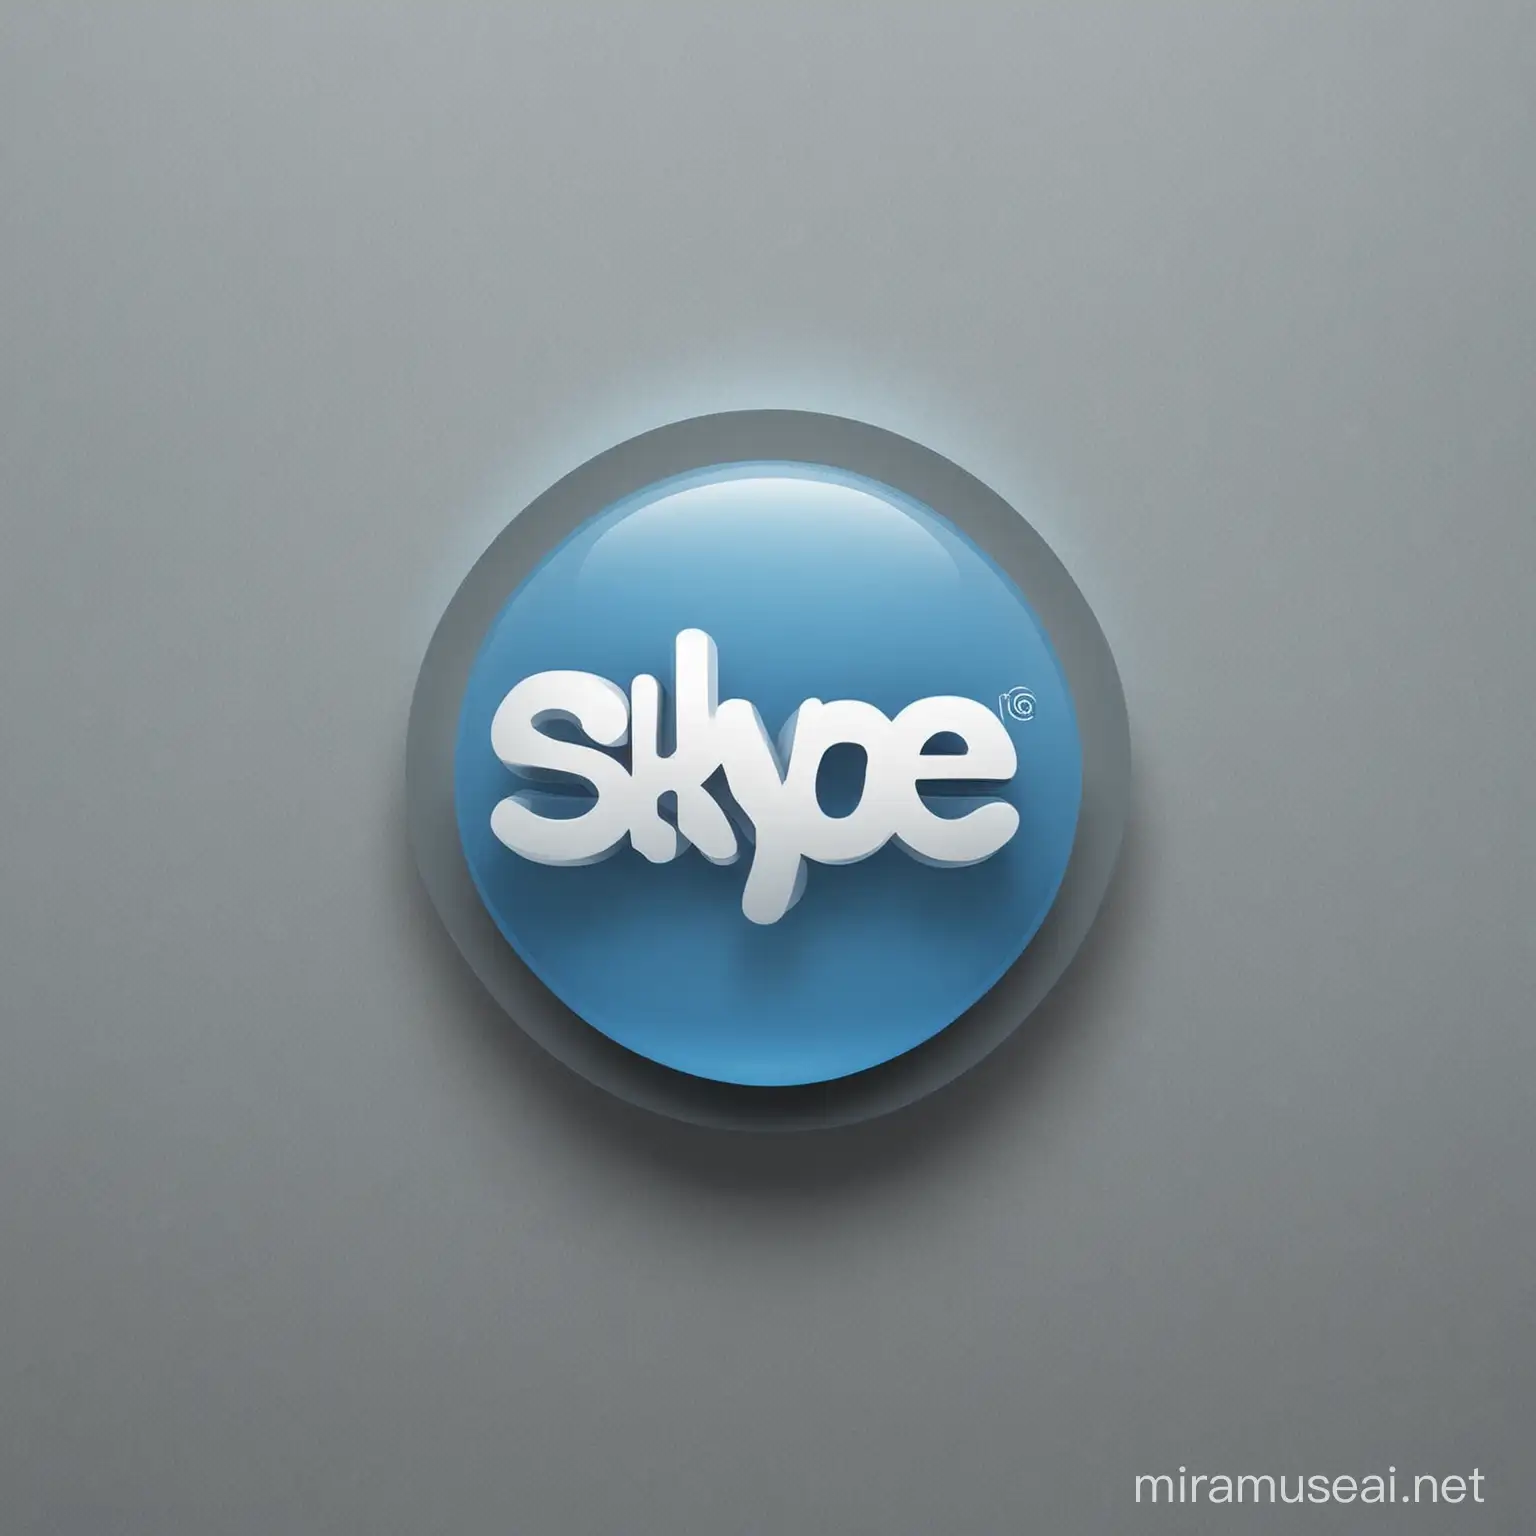 Skype Logo Design for Portfolio Presentation